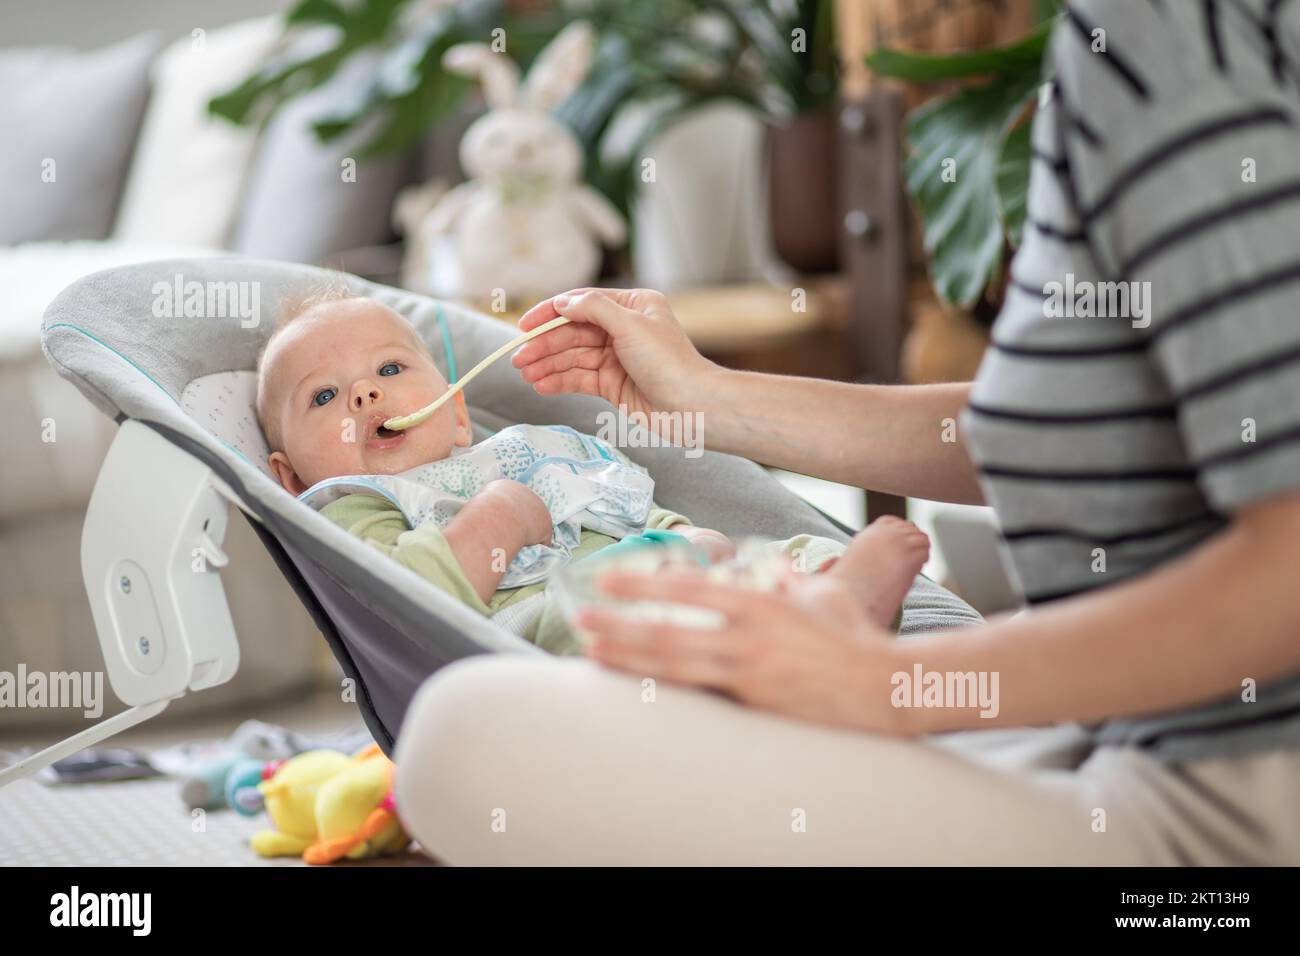 Cuchara madre alimentando a su bebé niño en silla de bebé con puré de frutas. Concepto de introducción de alimentos sólidos para bebés Foto de stock